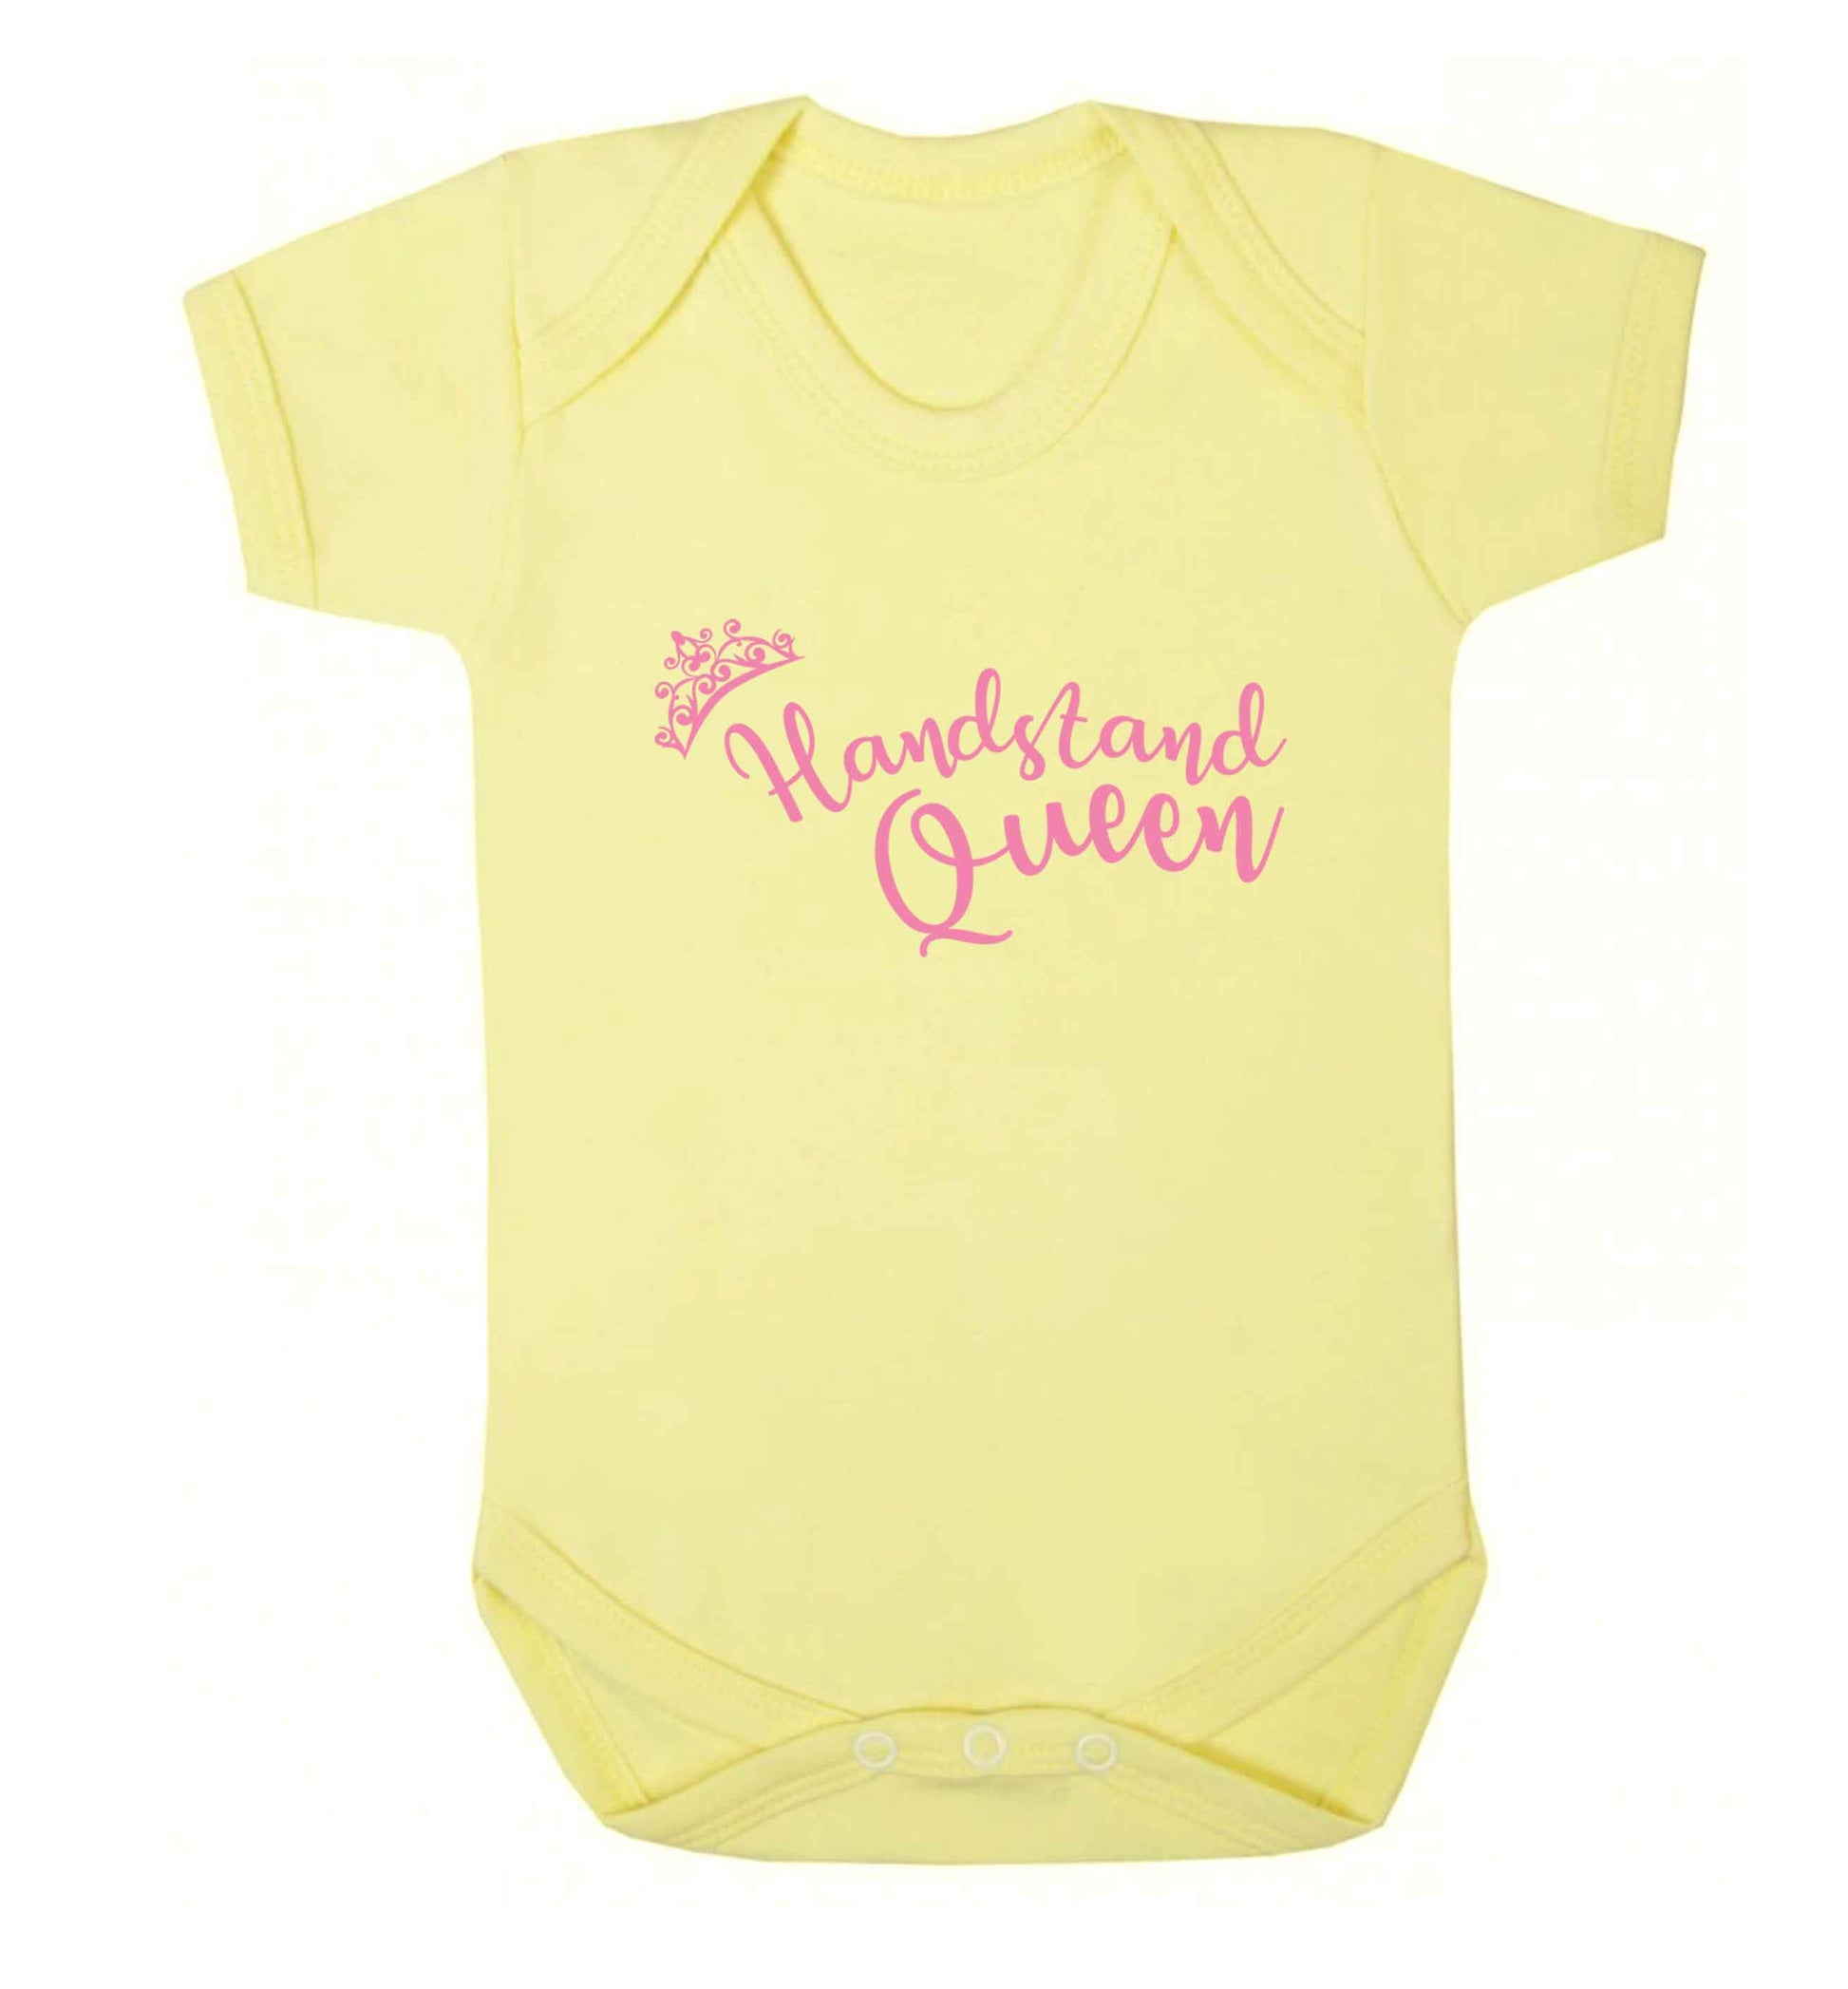 Handstand Queen Baby Vest pale yellow 18-24 months